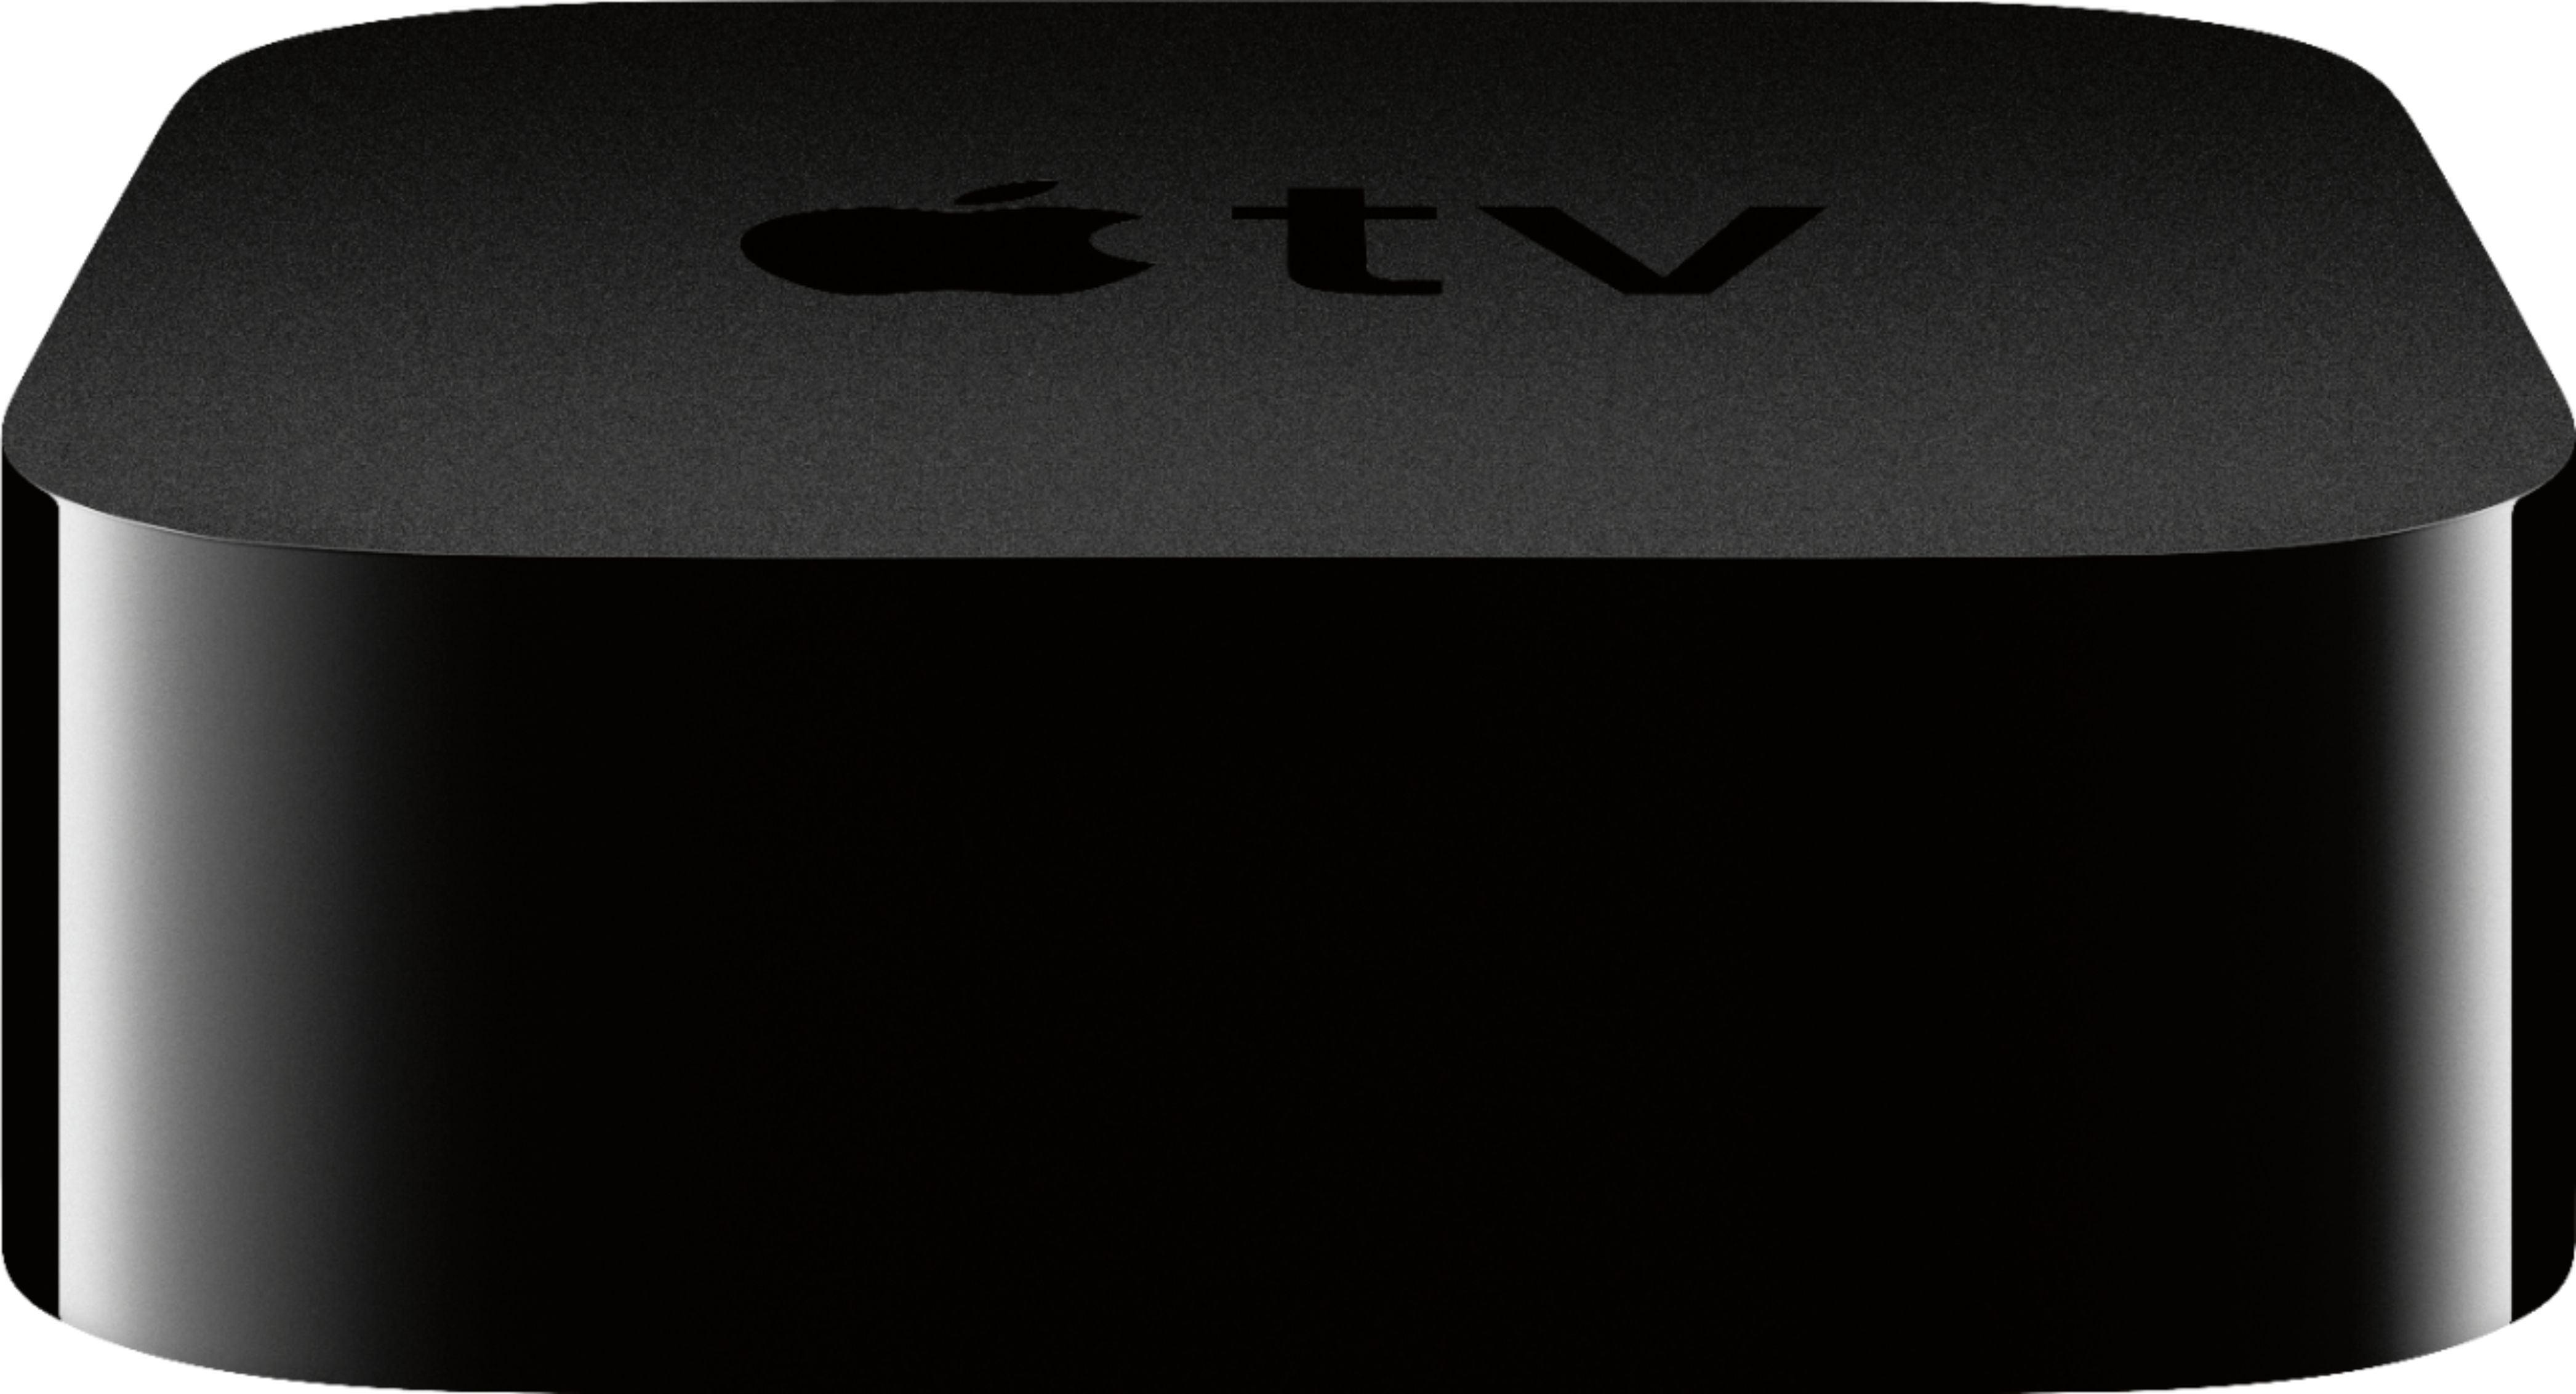 Apple TV 4K 第2世代32GB (A2169) MXGY2J/A テレビ/映像機器数量限定 